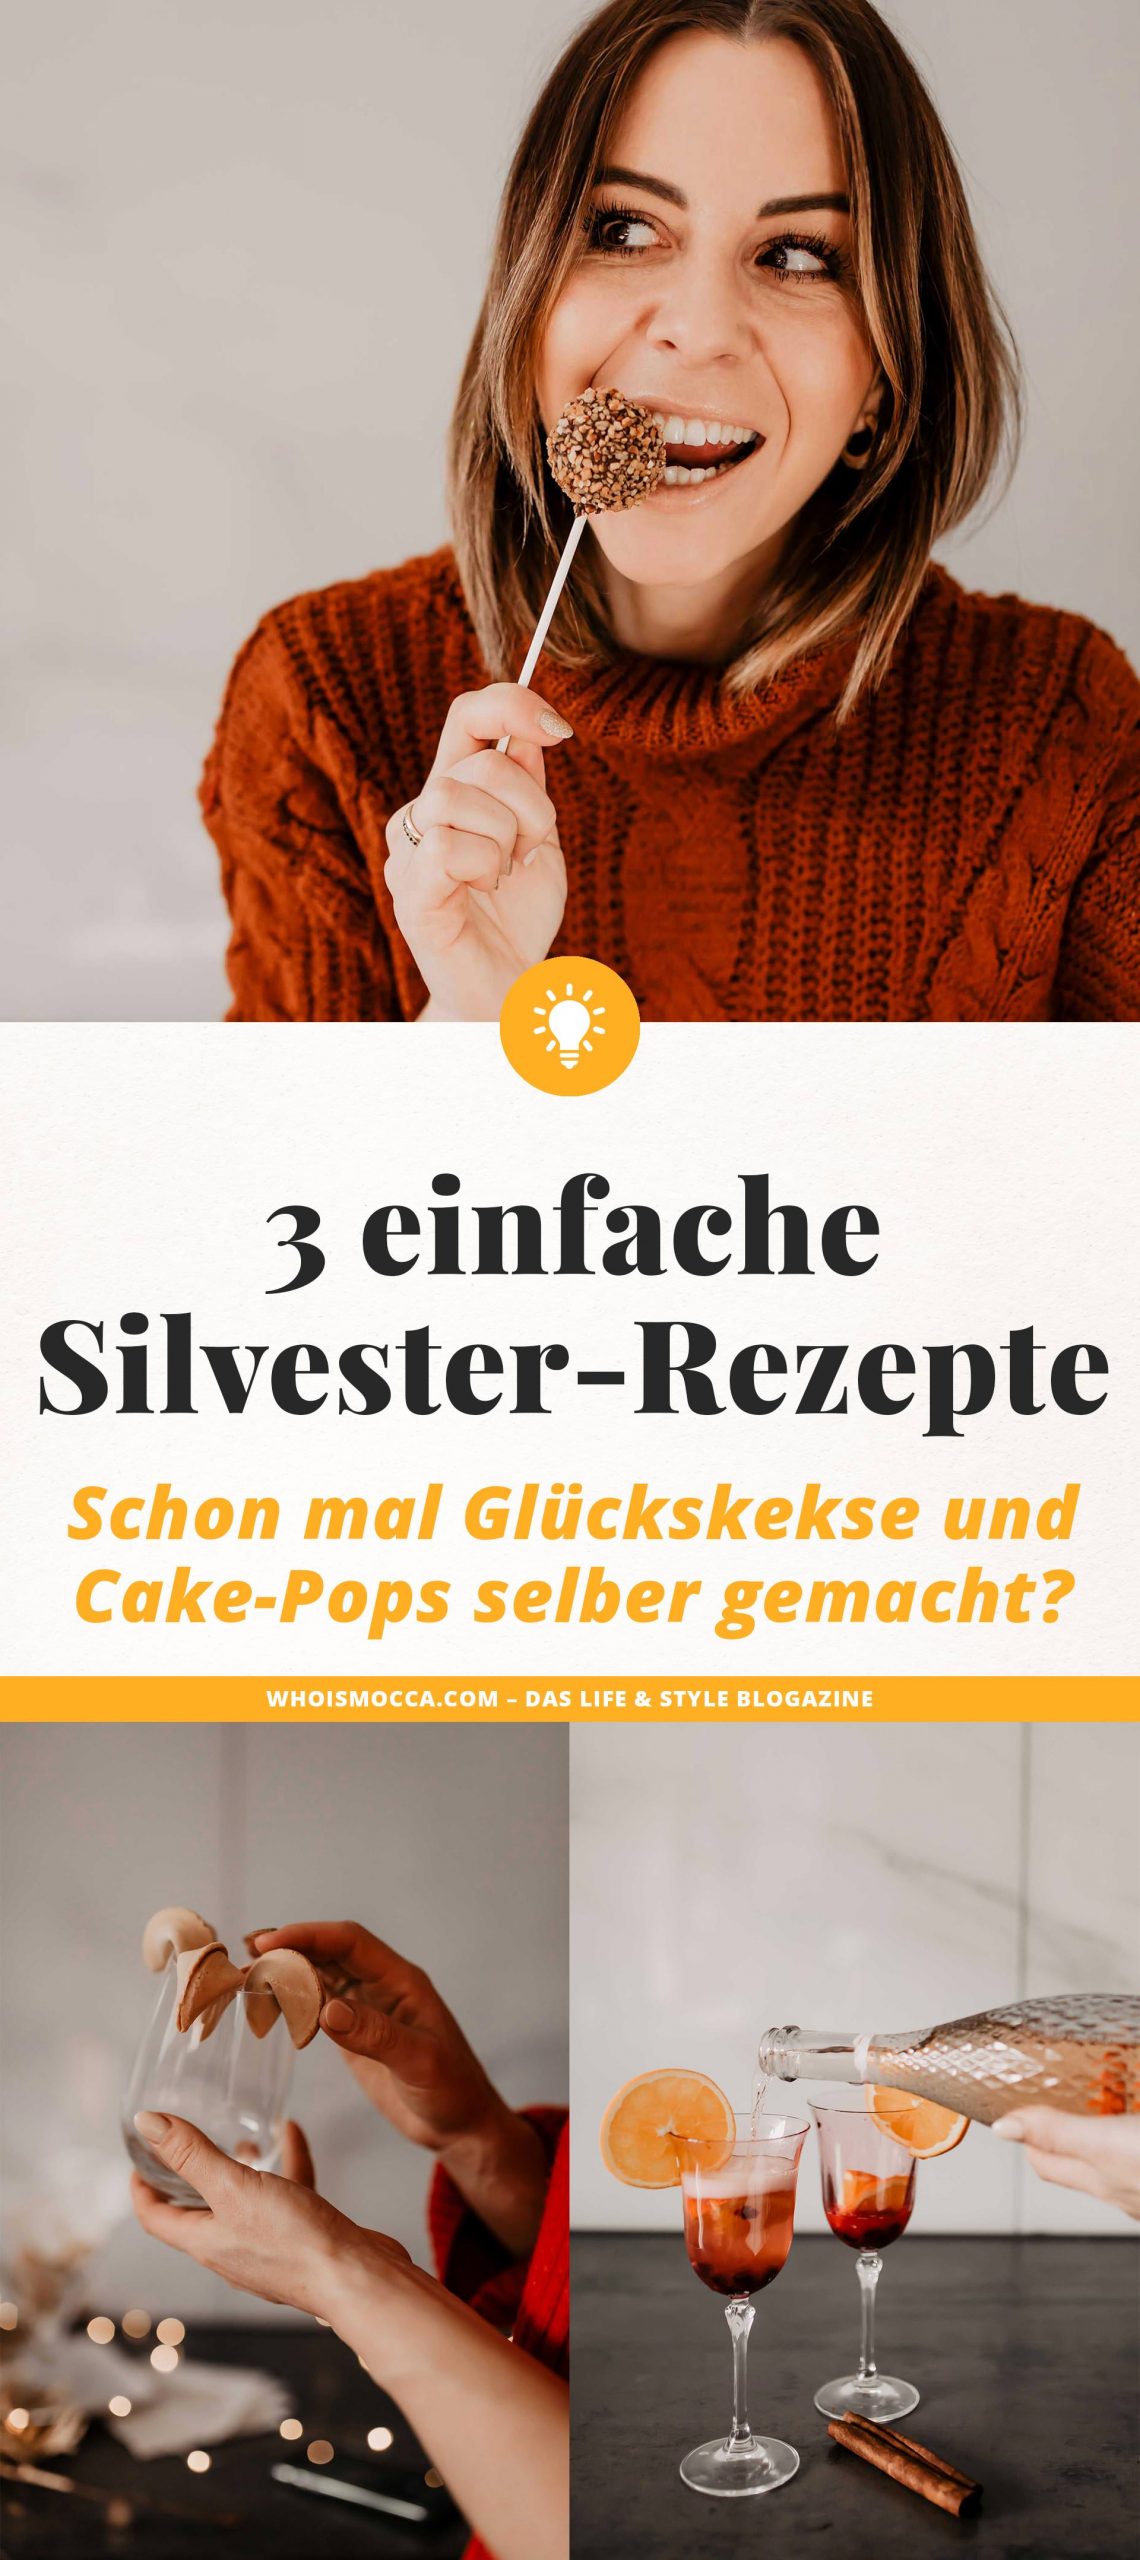 Anzeige. 3 einfache Silvester-Rezepte findest du heute am Foodblog. Ich zeige dir, wie schnell man Schoko-Cake-Pops selber machen kann und wie dir leckere Glückskekse gelingen. Den Silvester-Spritzer musst du auch unbedingt ausprobieren! www.whoismocca.com #silvester #rezepte #cakepops #glückskekse #silvesterspritzer